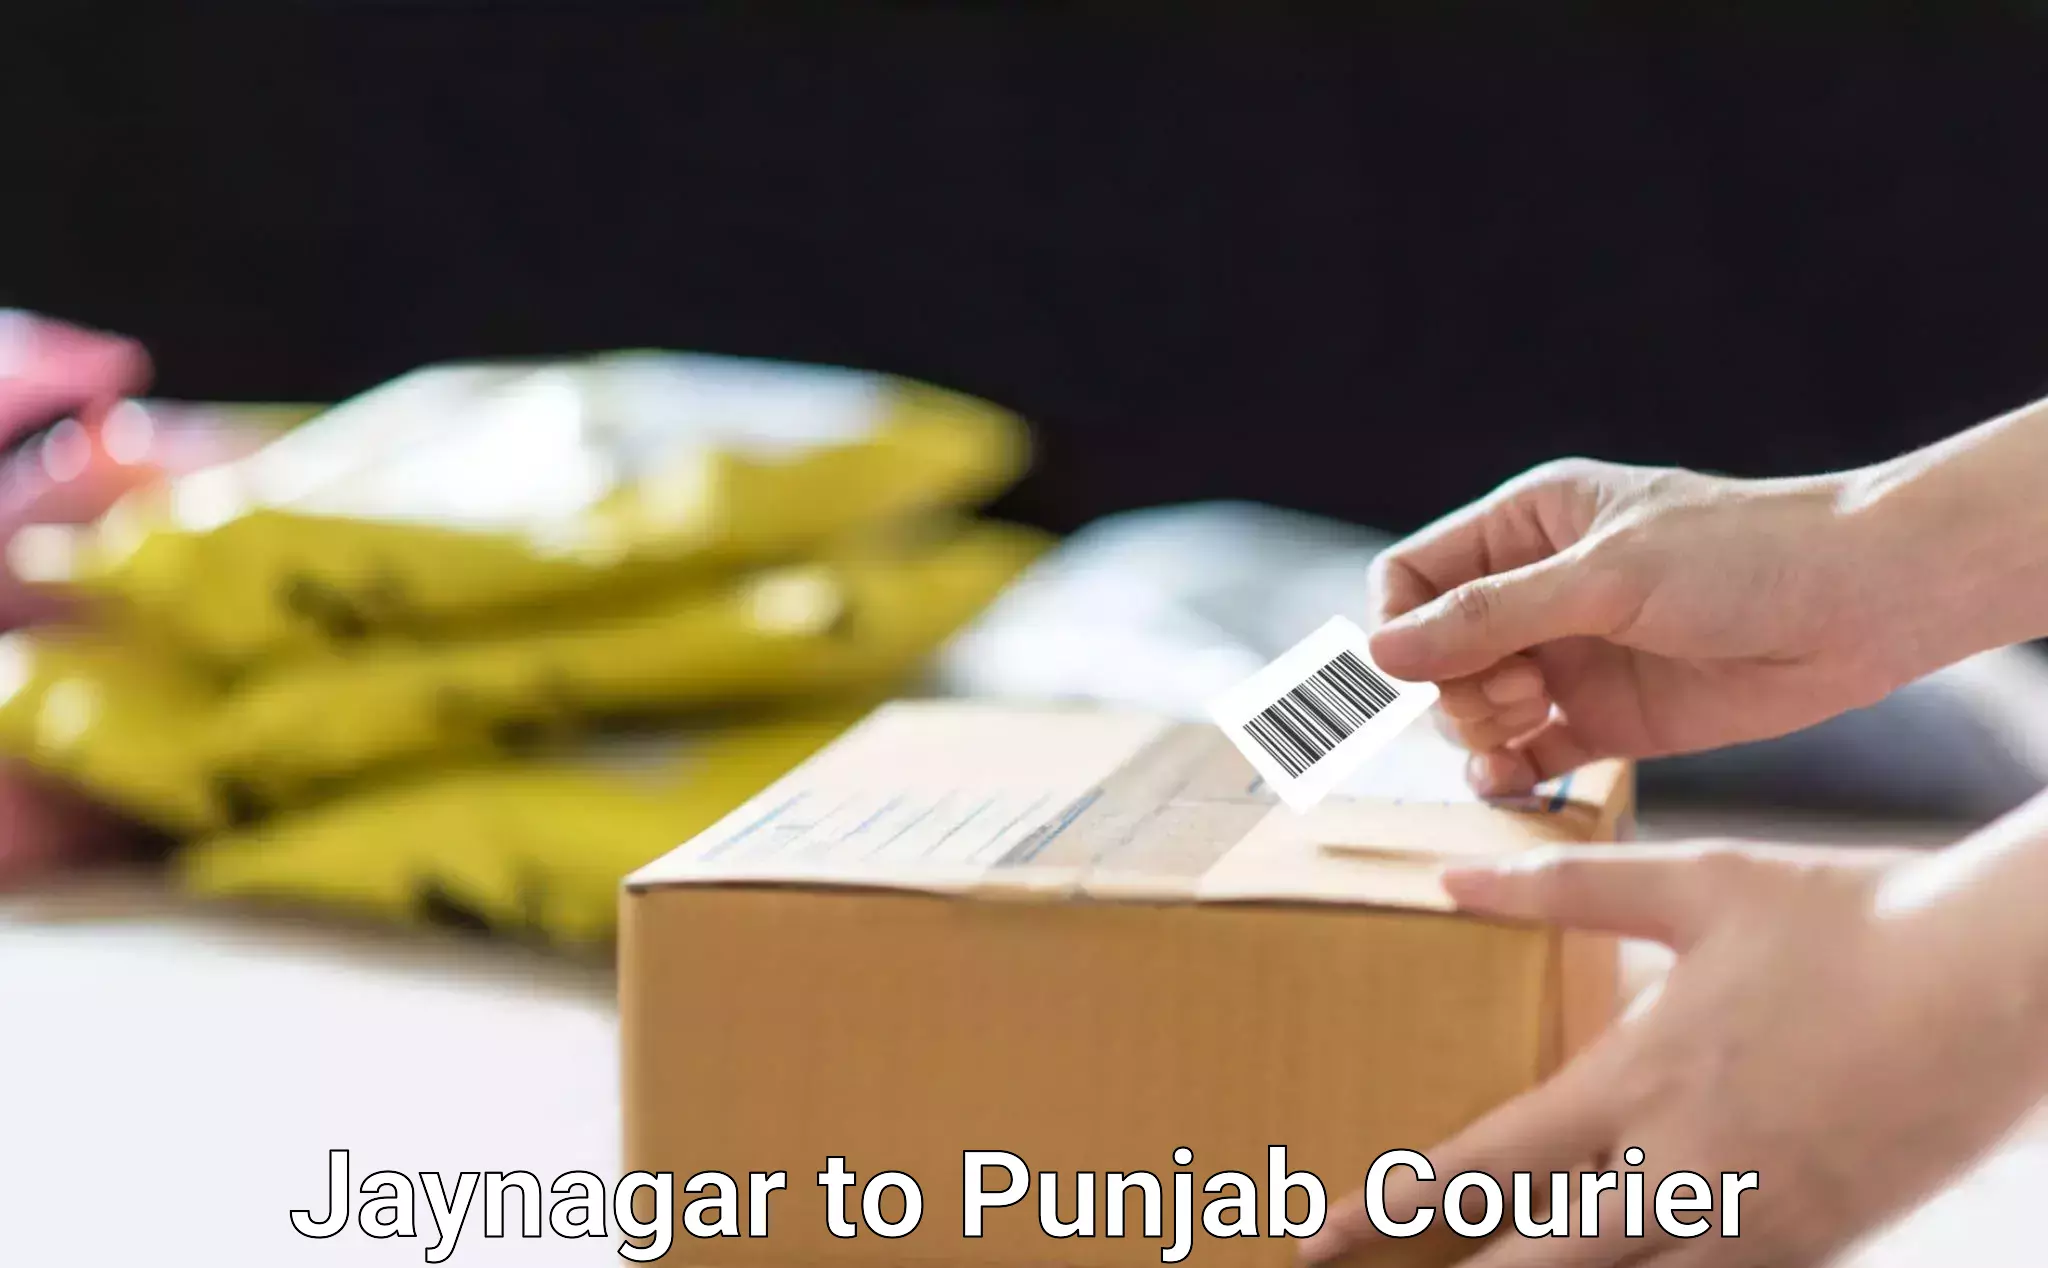 Furniture transport professionals Jaynagar to Punjab